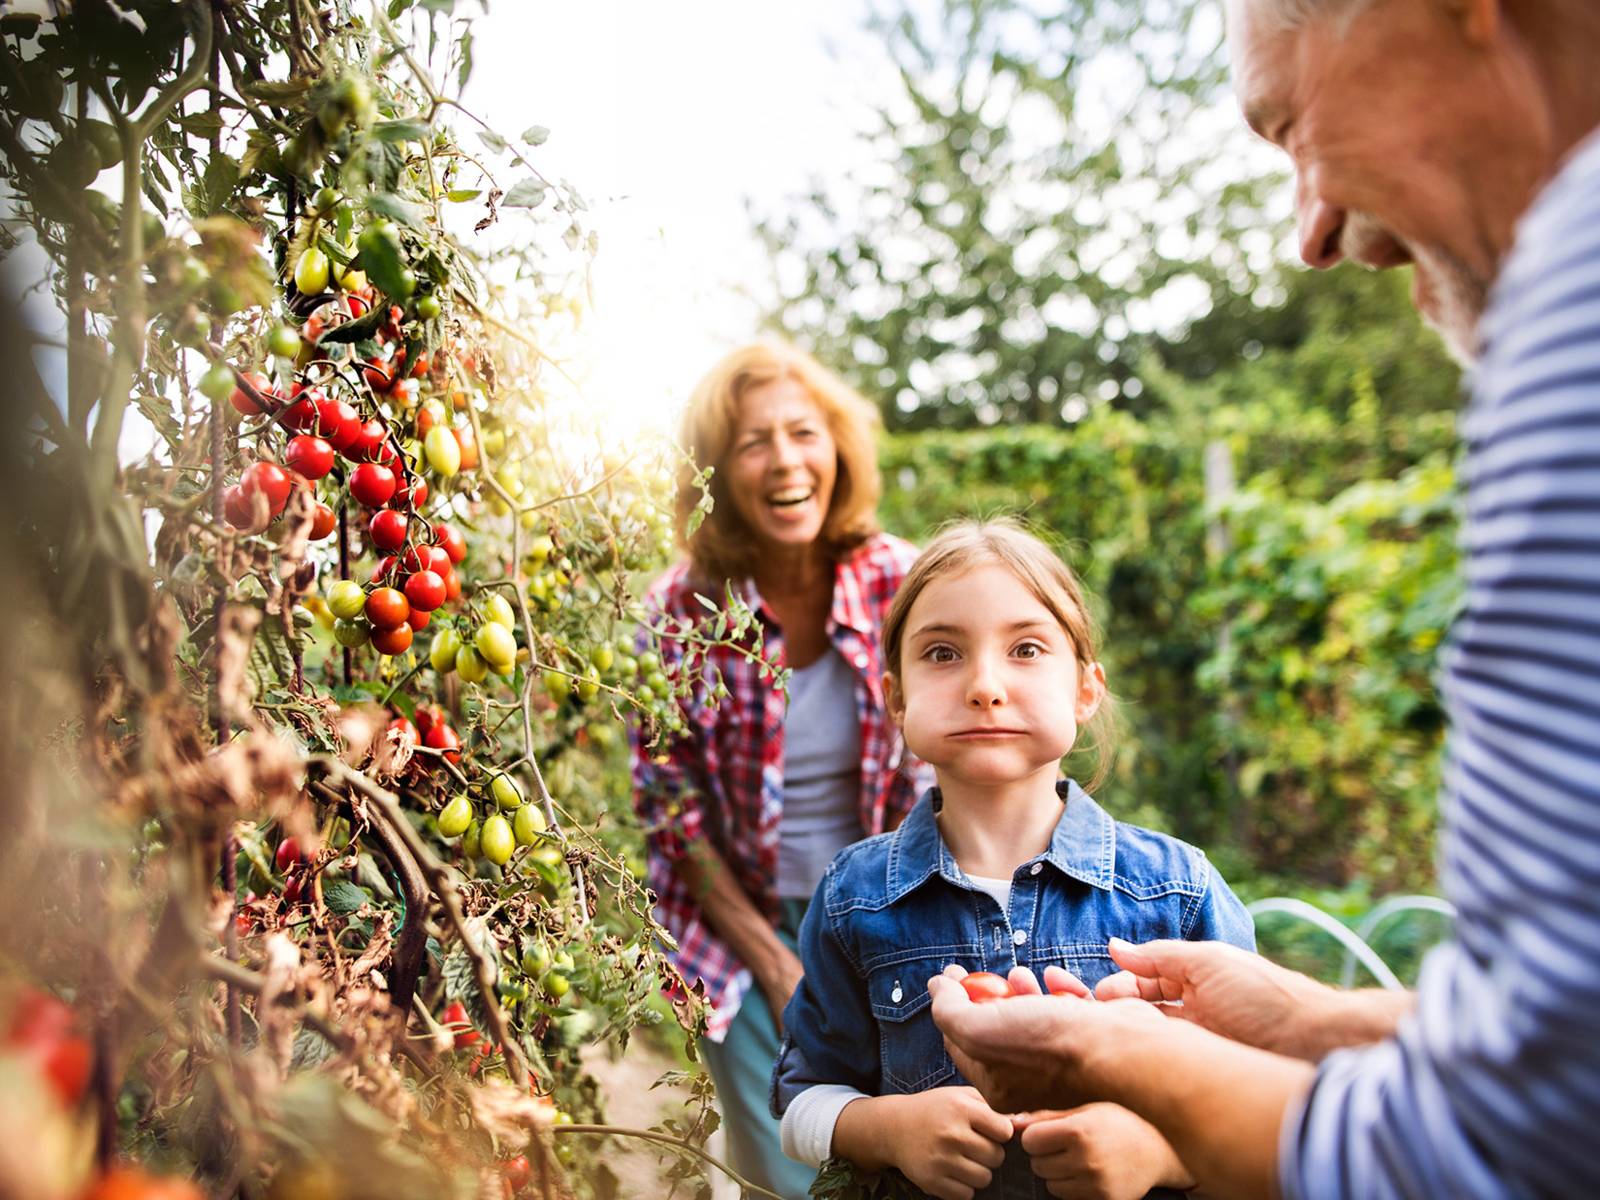 Ein Mädchen mit vollem Mund steht in einem Garten und bekommt von seinem Großvater etwas angereicht, während die Großmutter im Hintergrund steht und freundlich lacht.